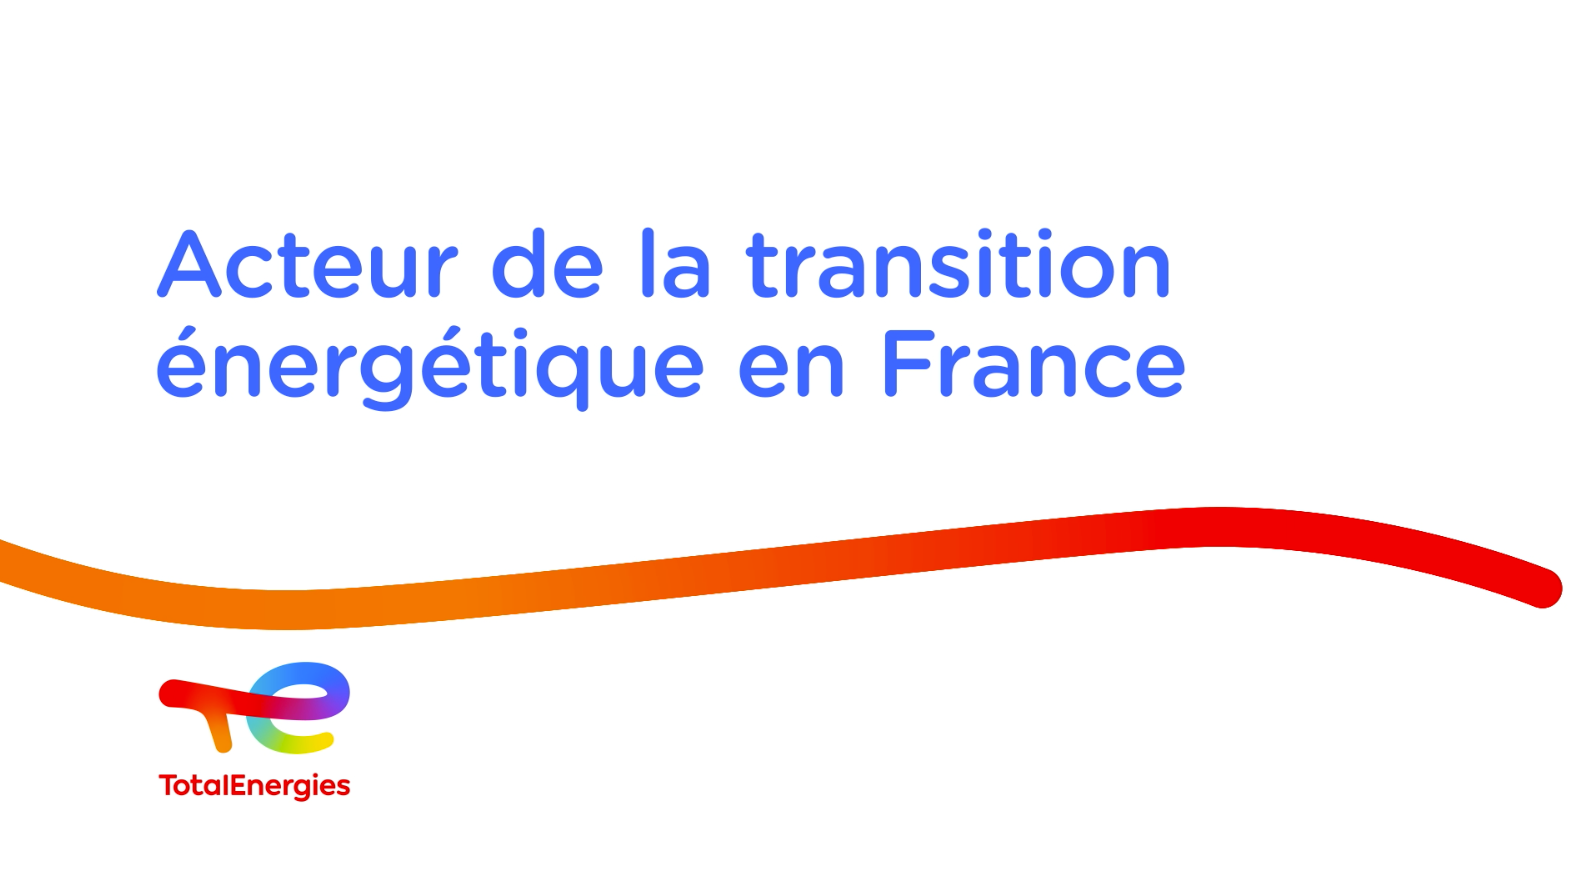 TotalEnergies acteur de la transition énergétique en France